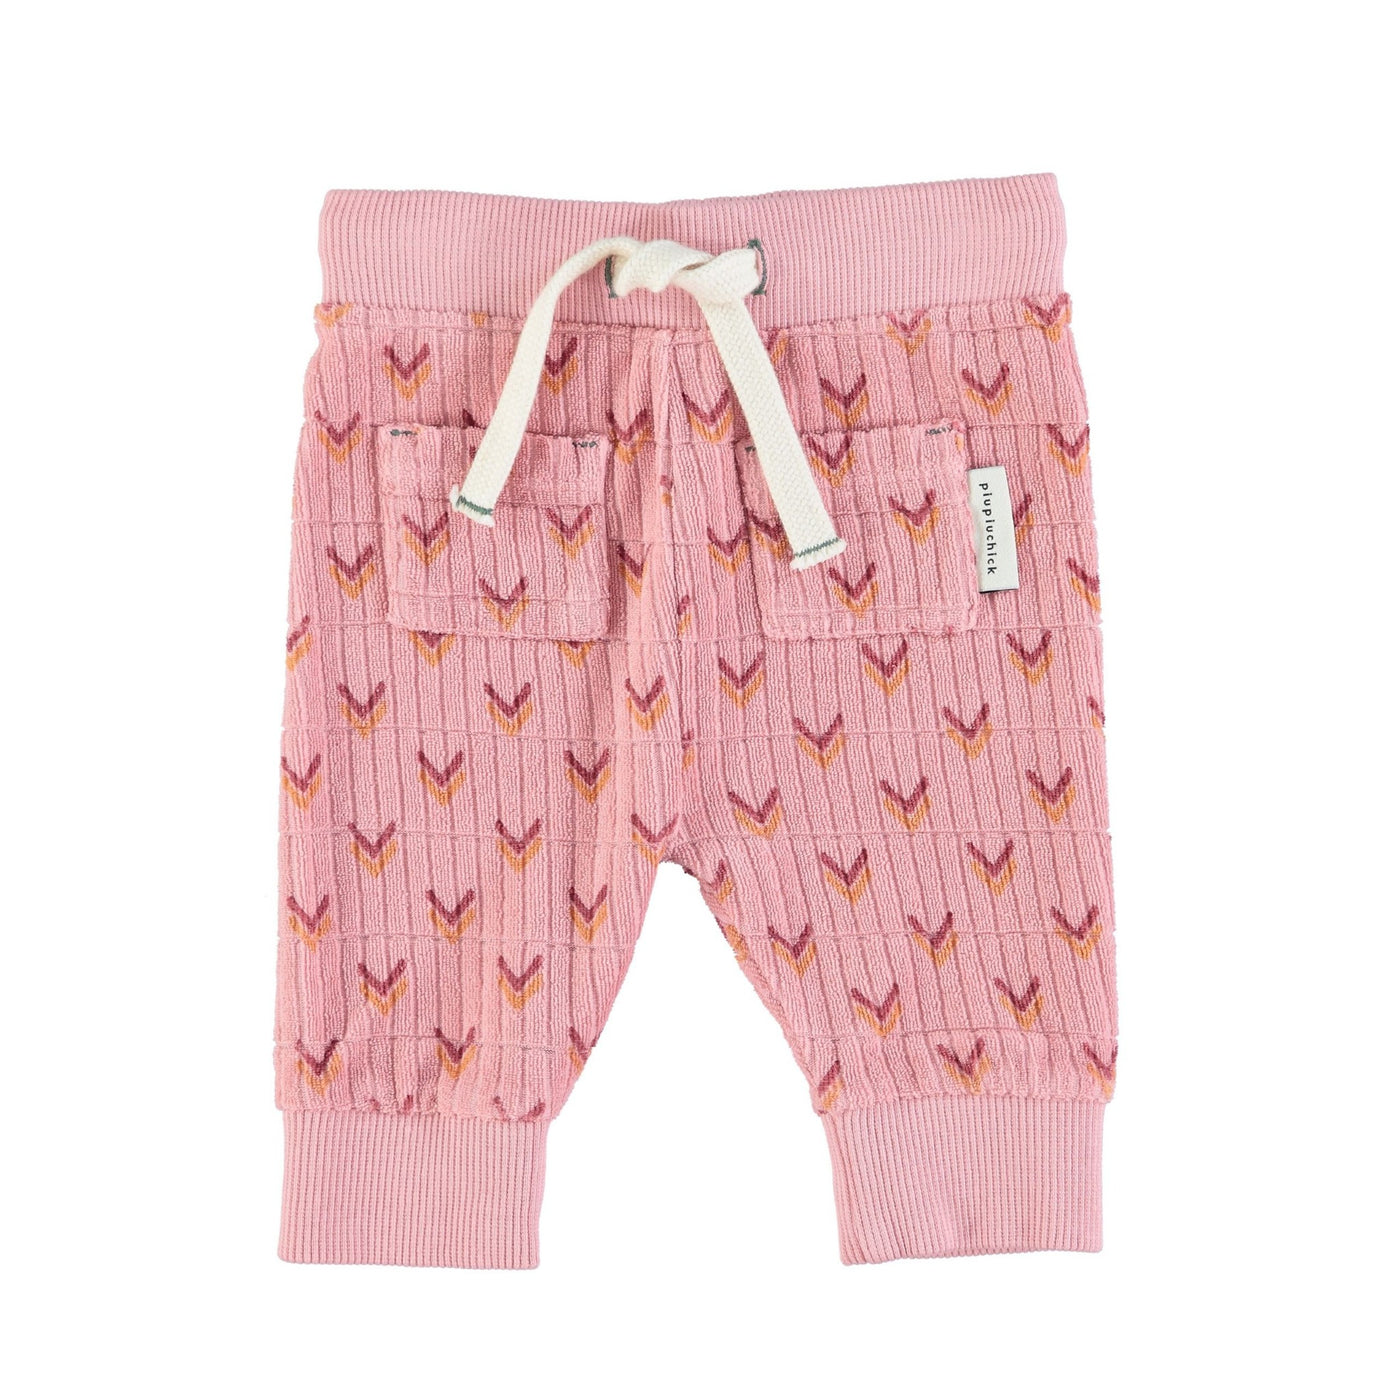 Piupiuchick pantalon bebé rosa con flechas multicolor